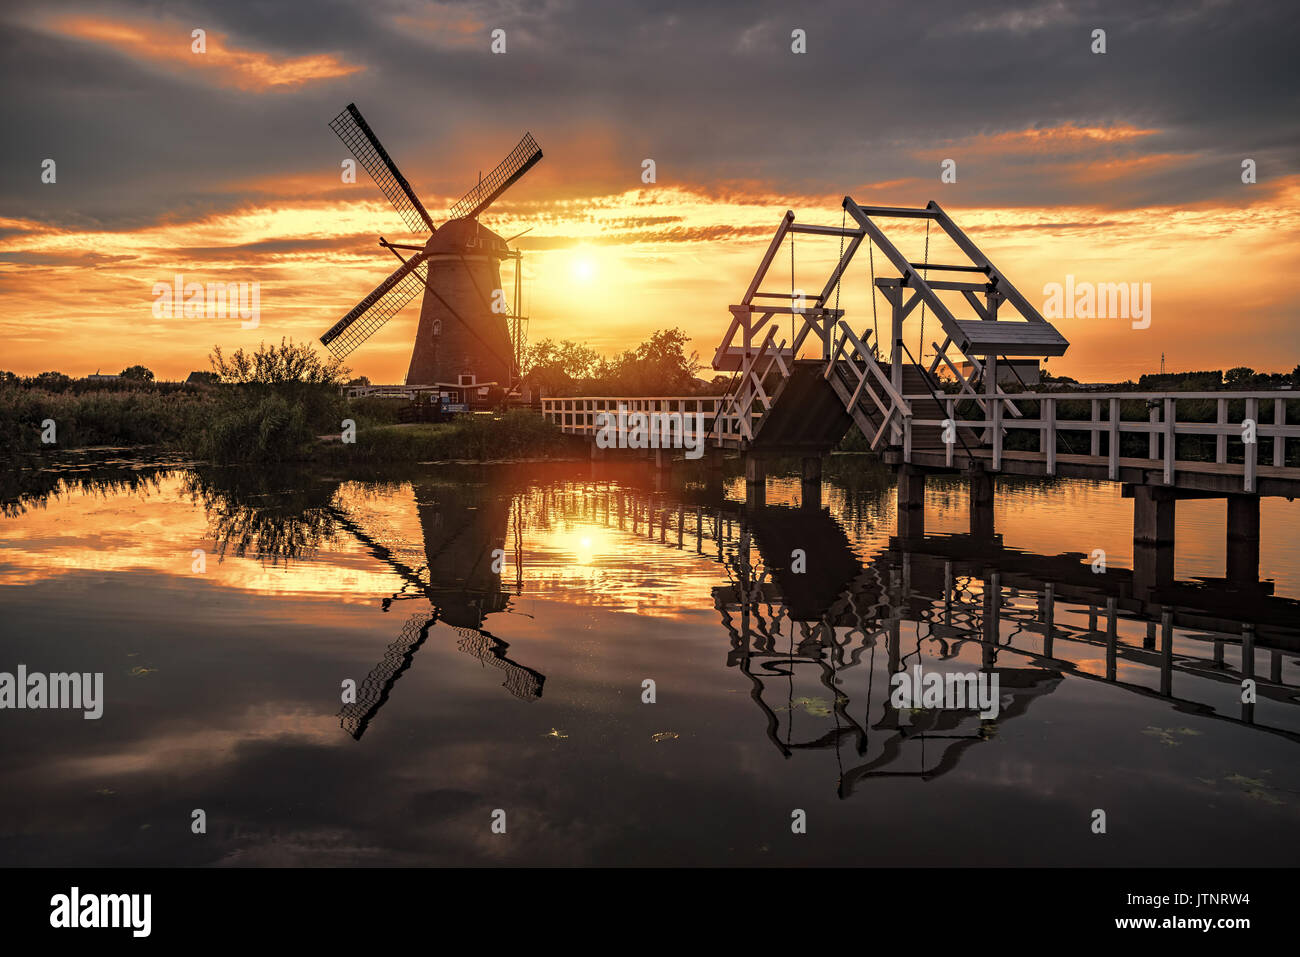 Sonnenaufgang auf dem kinderdijk Windmühle im 17. Jahrhundert gebaut, die zum Weltkulturerbe der Unesco Denkmäler in alblasserdam, süd-westlich von Rotterdam, Niederlande Stockfoto